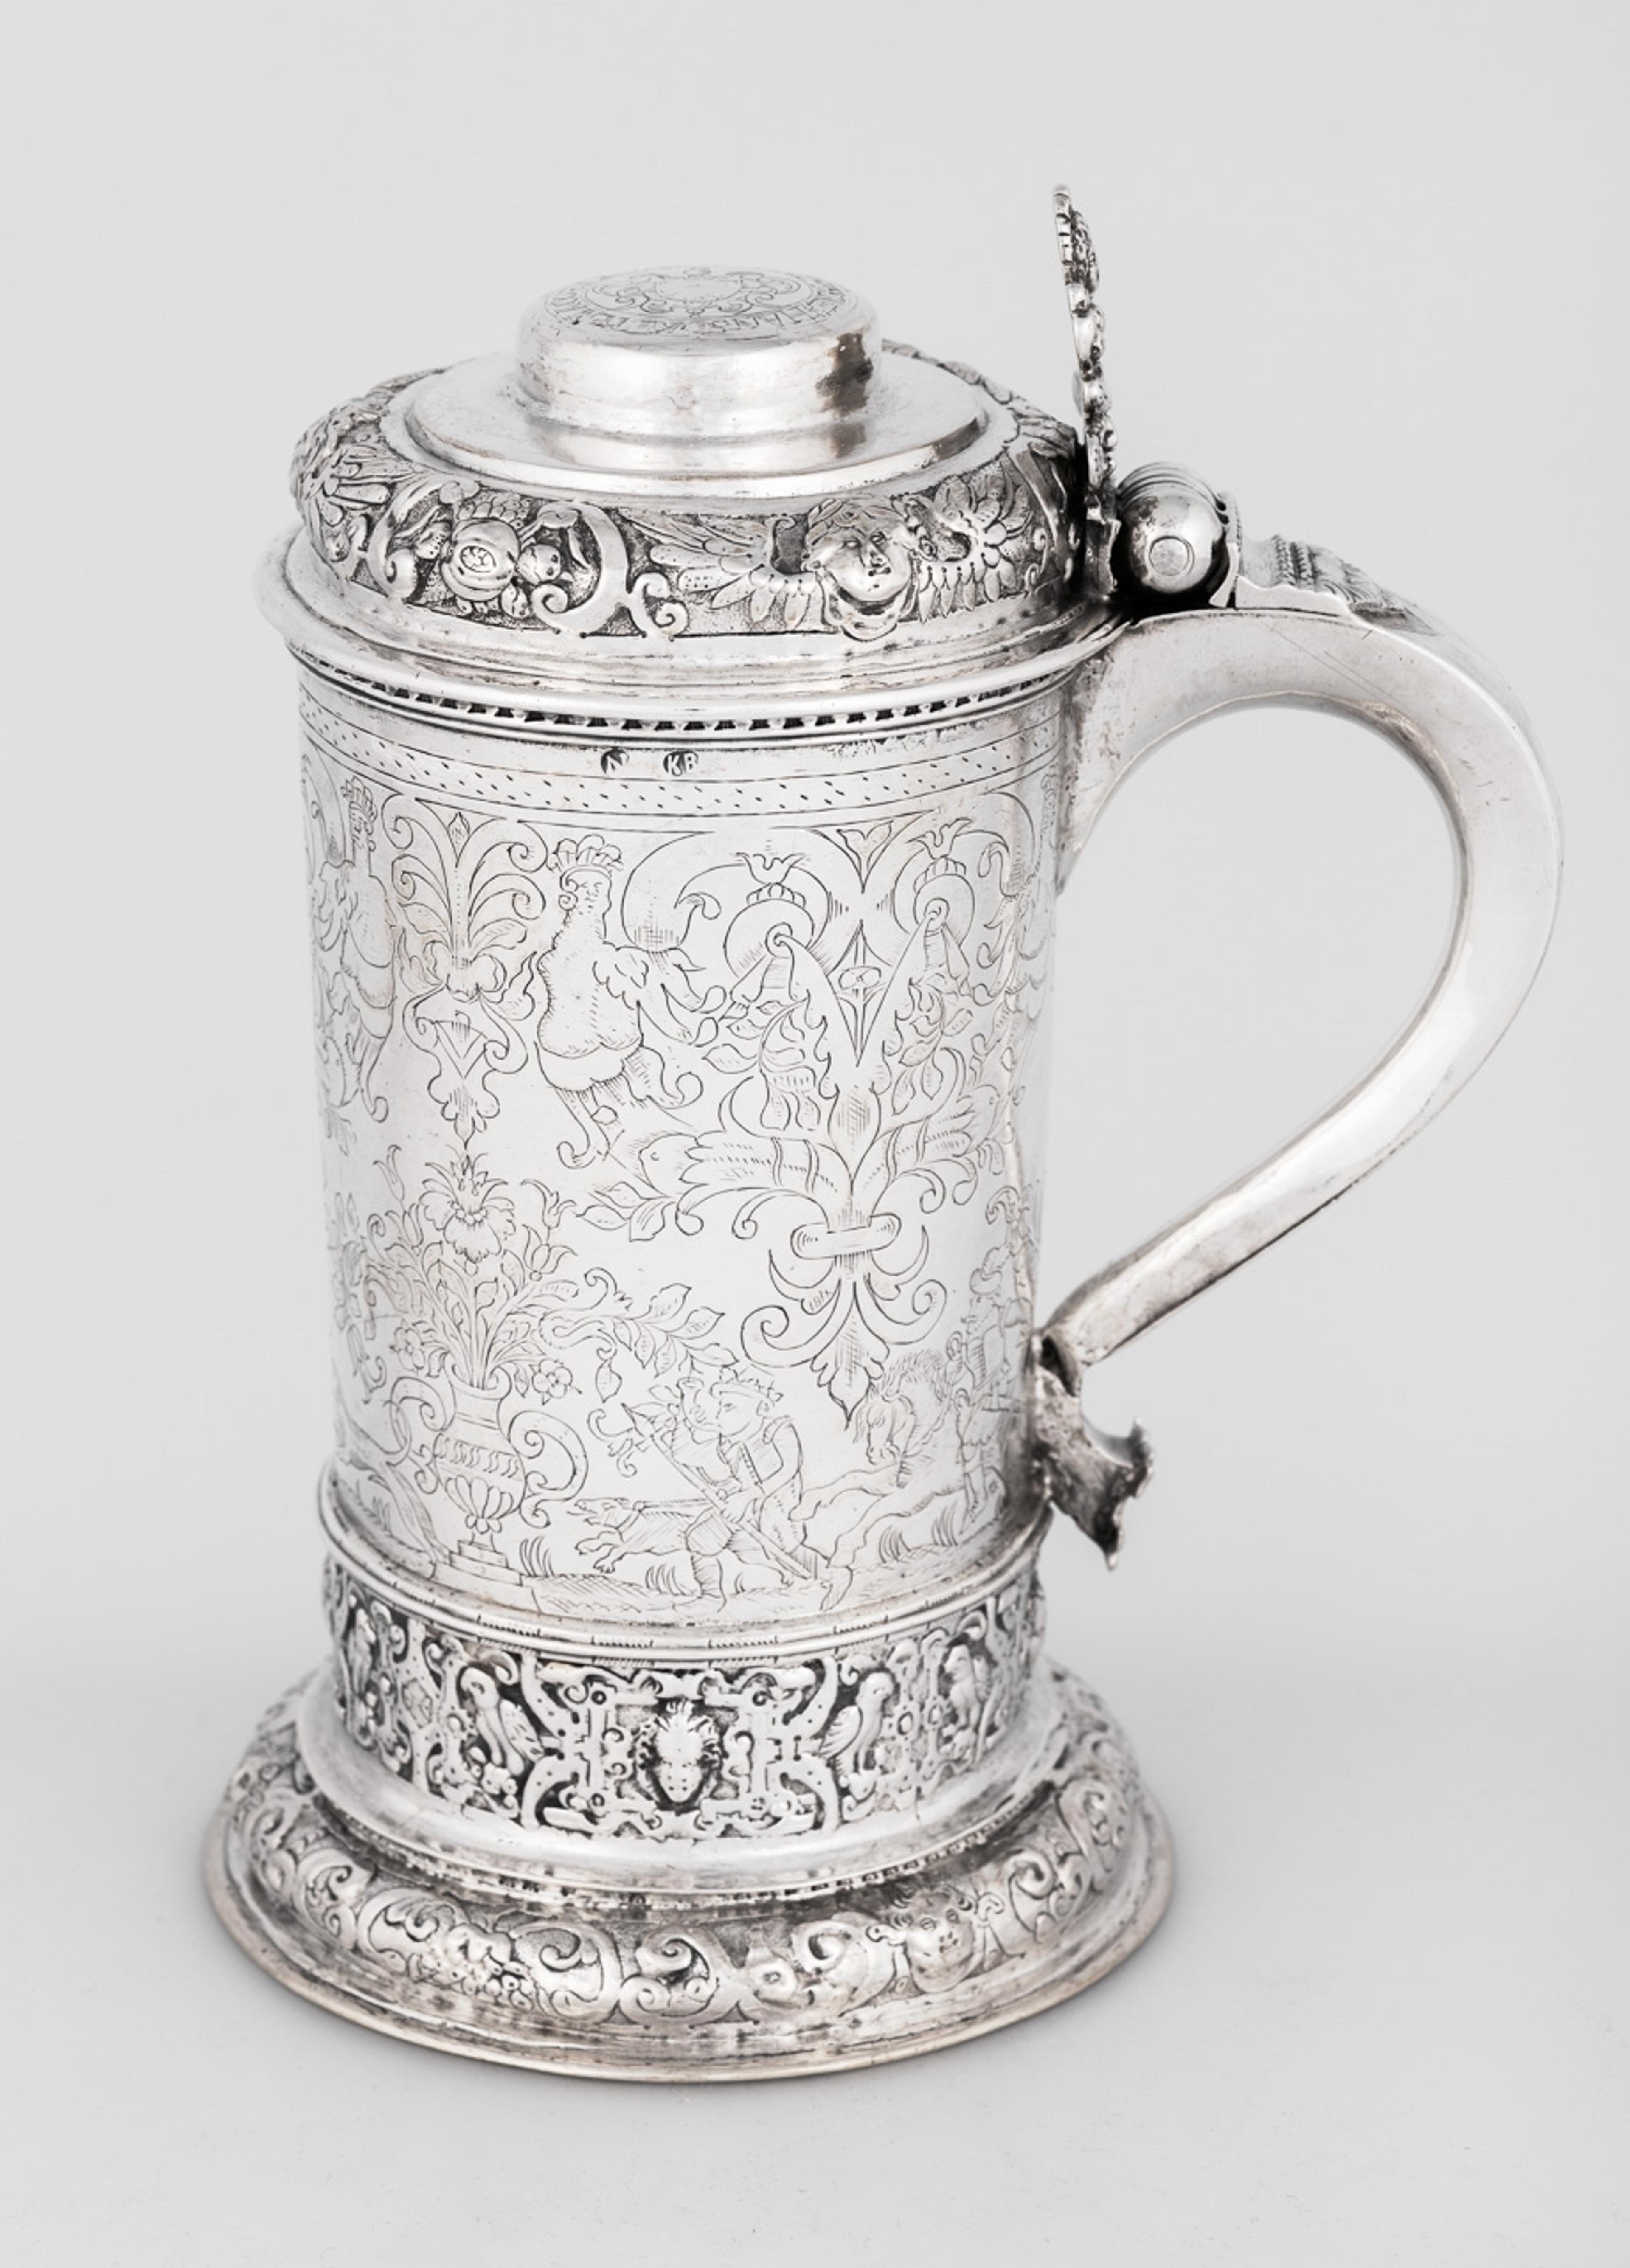 En ølkanne i sølv med rik dekor